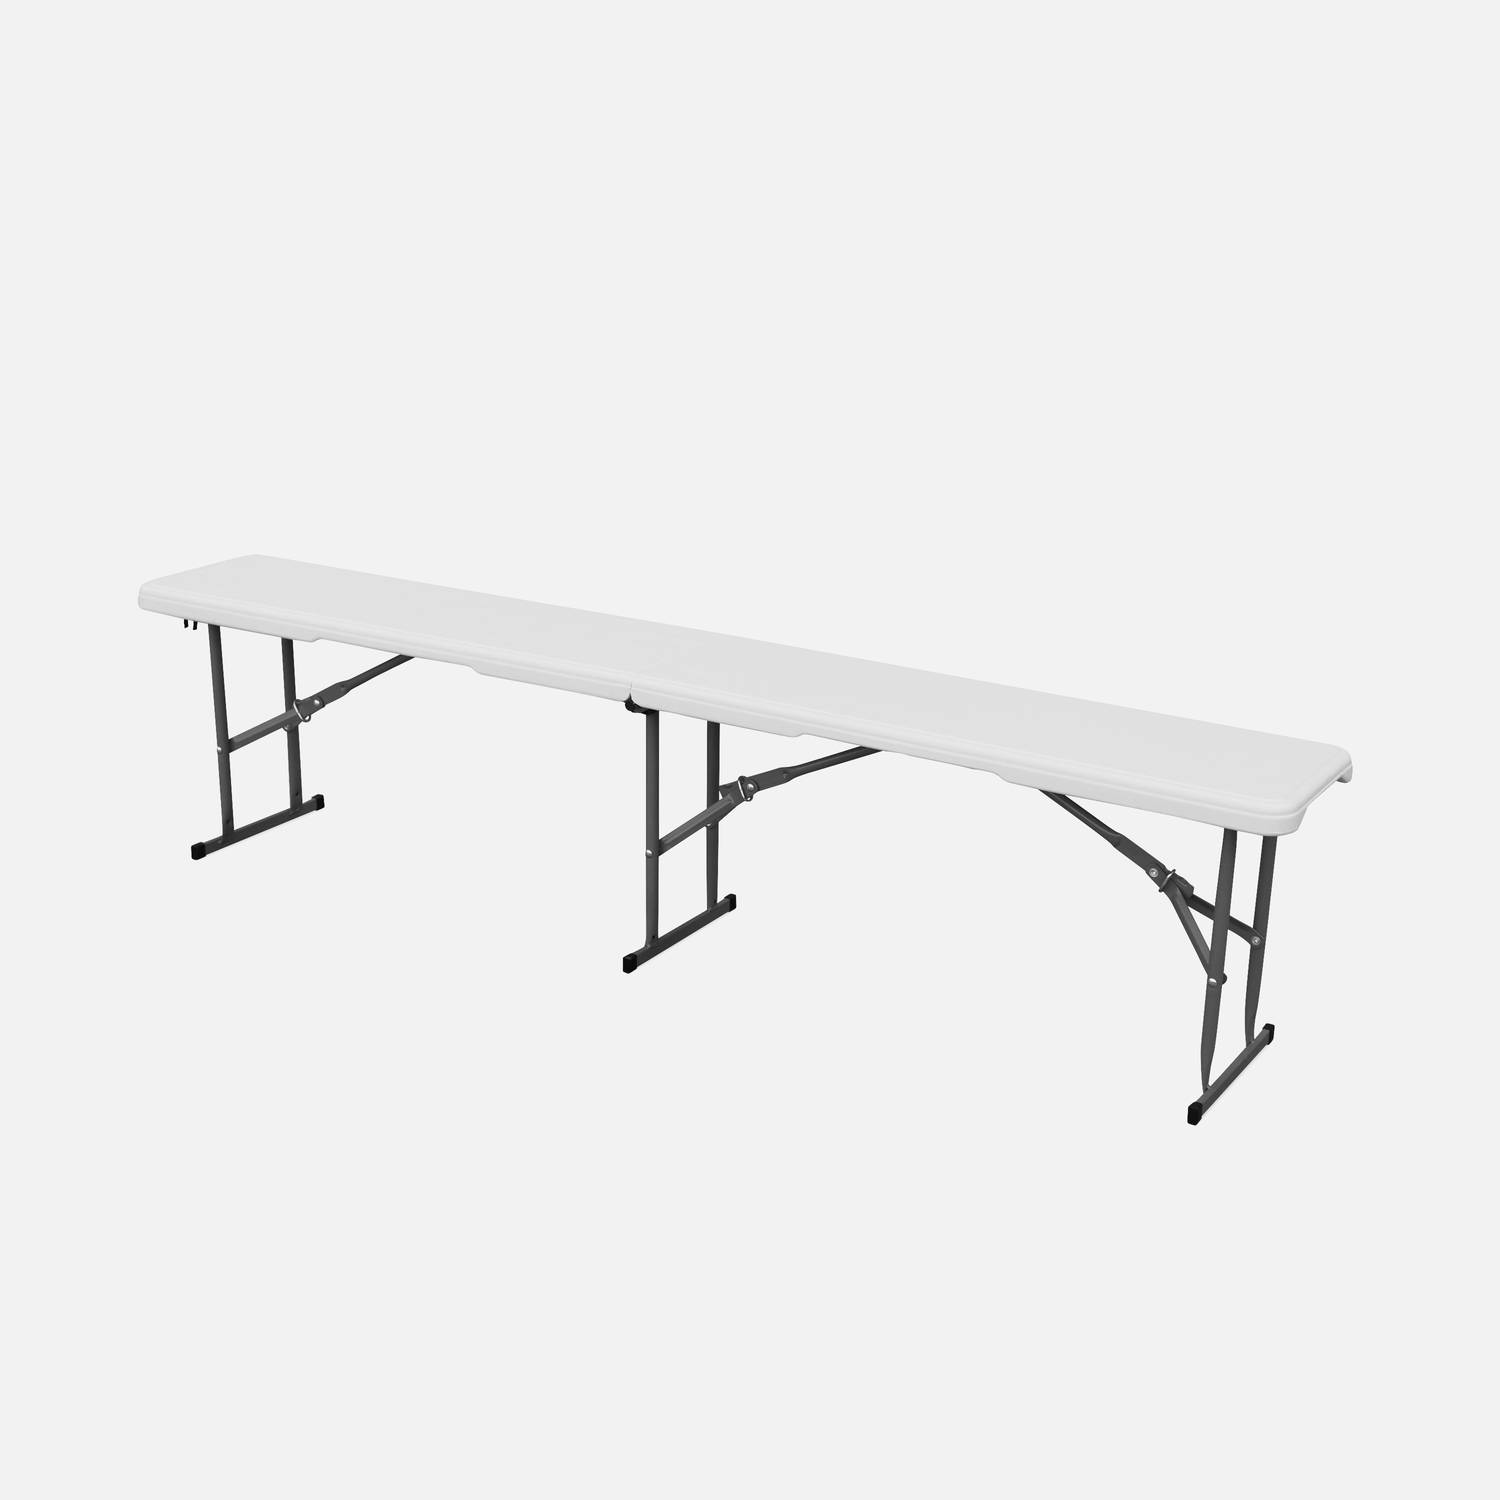 Conjunto mesa y bancos para celebración, 180cm, plegables, con asa de transporte, plástico blanco Photo4